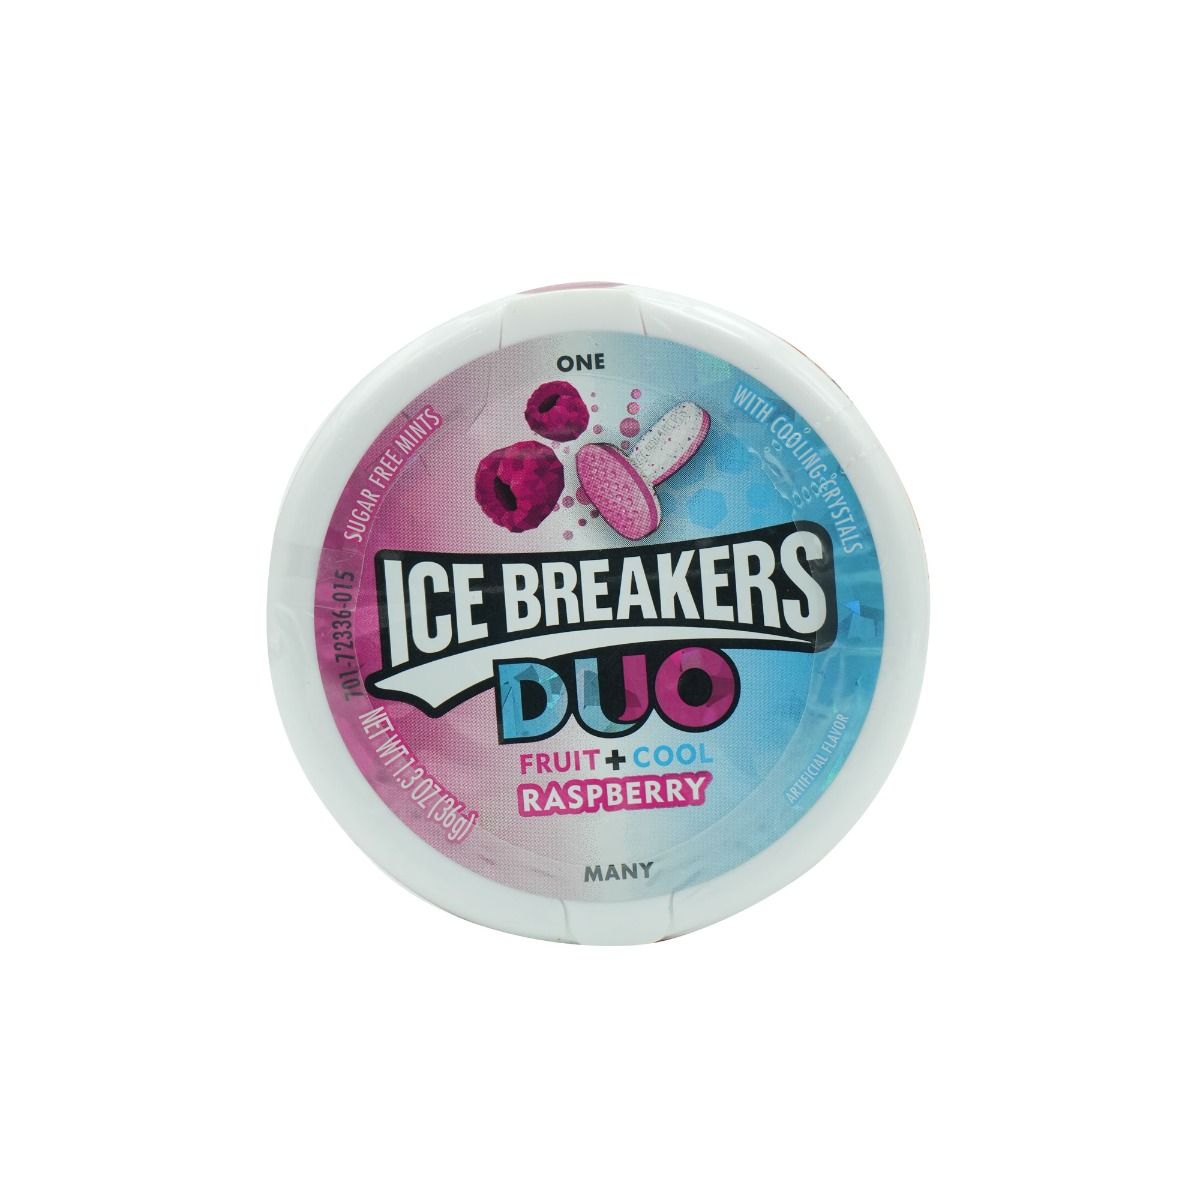 Ice Breakers Duo Fruit + Cool Sugar FreeRaspberry 36g, Pack of 1 